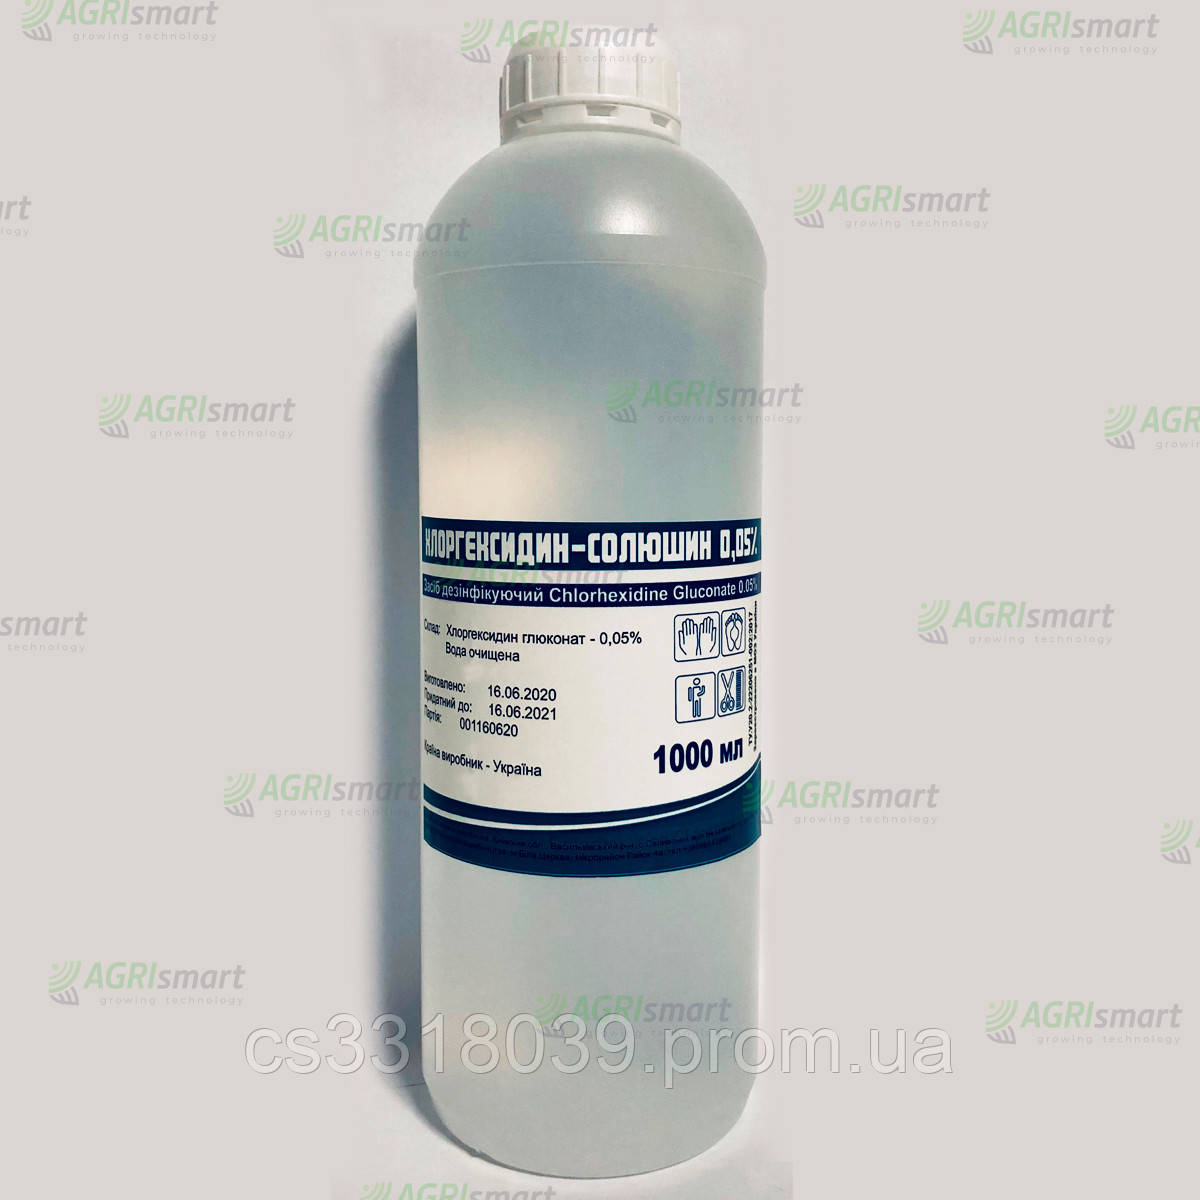 Хлоргексидин біглюконат — 0,05%, Антисептик дезінфектор, 1000 мл.